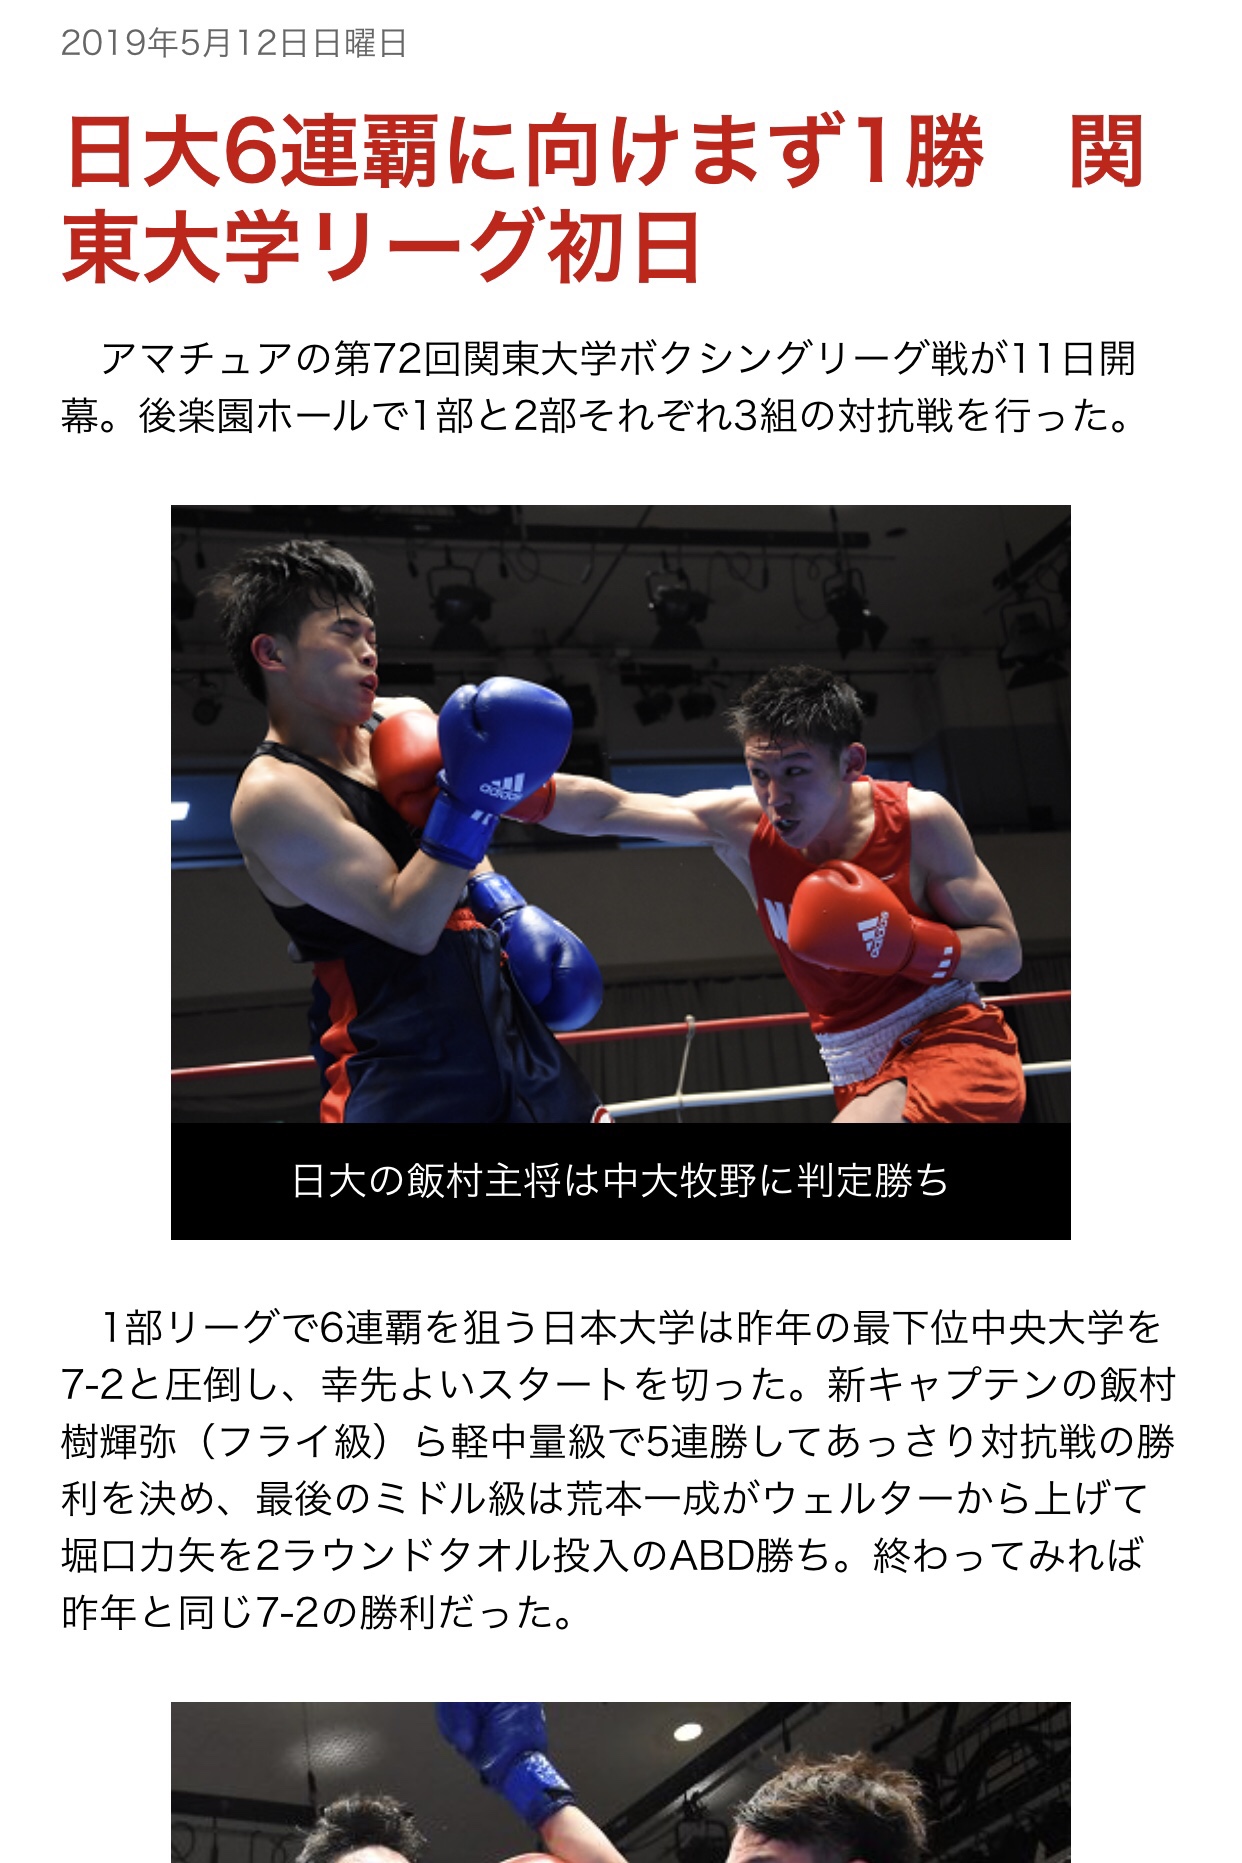 関東大学ボクシングリーグ戦 第1週結果